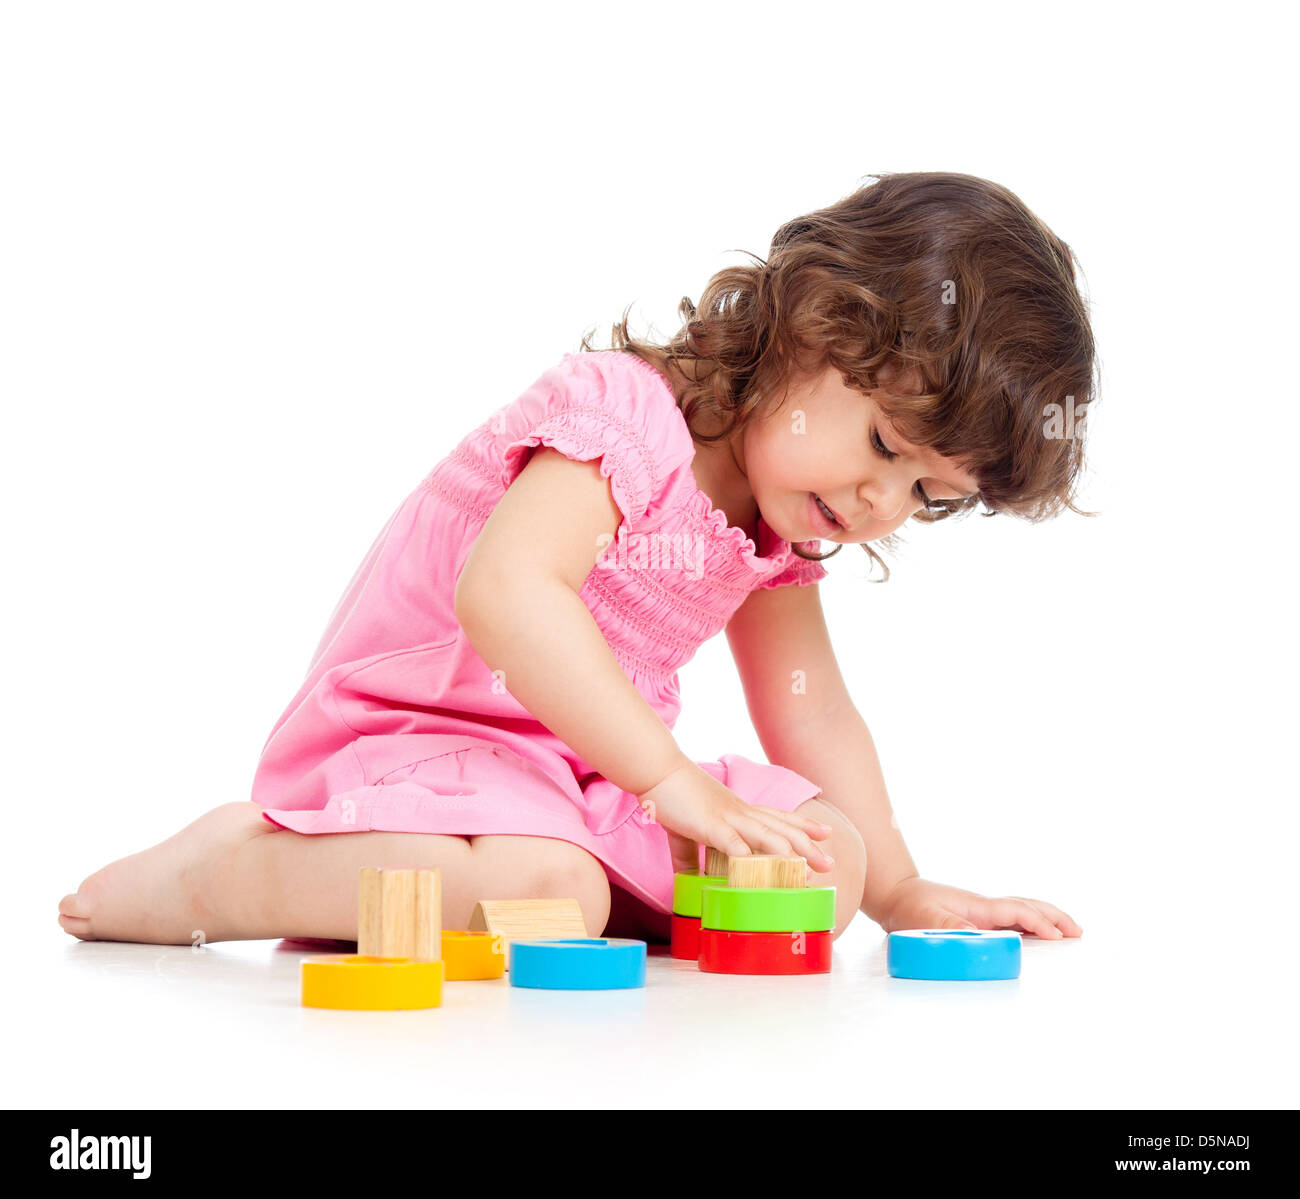 kleines Kind mit bunten Spielzeug, isoliert auf weiß Stockfoto